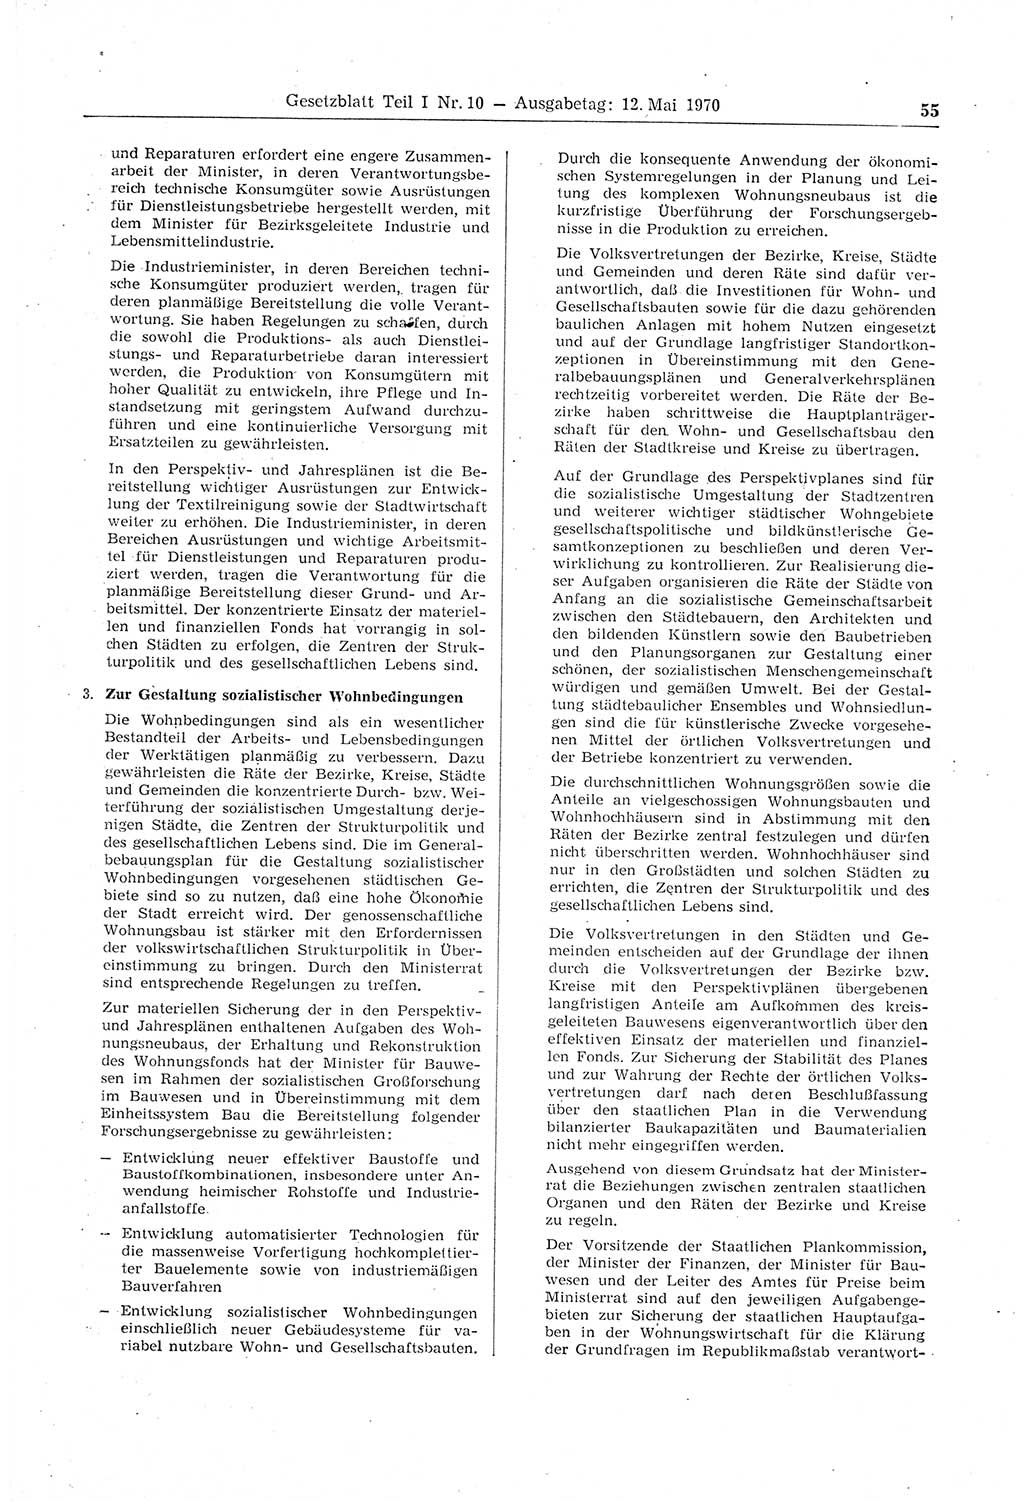 Gesetzblatt (GBl.) der Deutschen Demokratischen Republik (DDR) Teil Ⅰ 1970, Seite 55 (GBl. DDR Ⅰ 1970, S. 55)